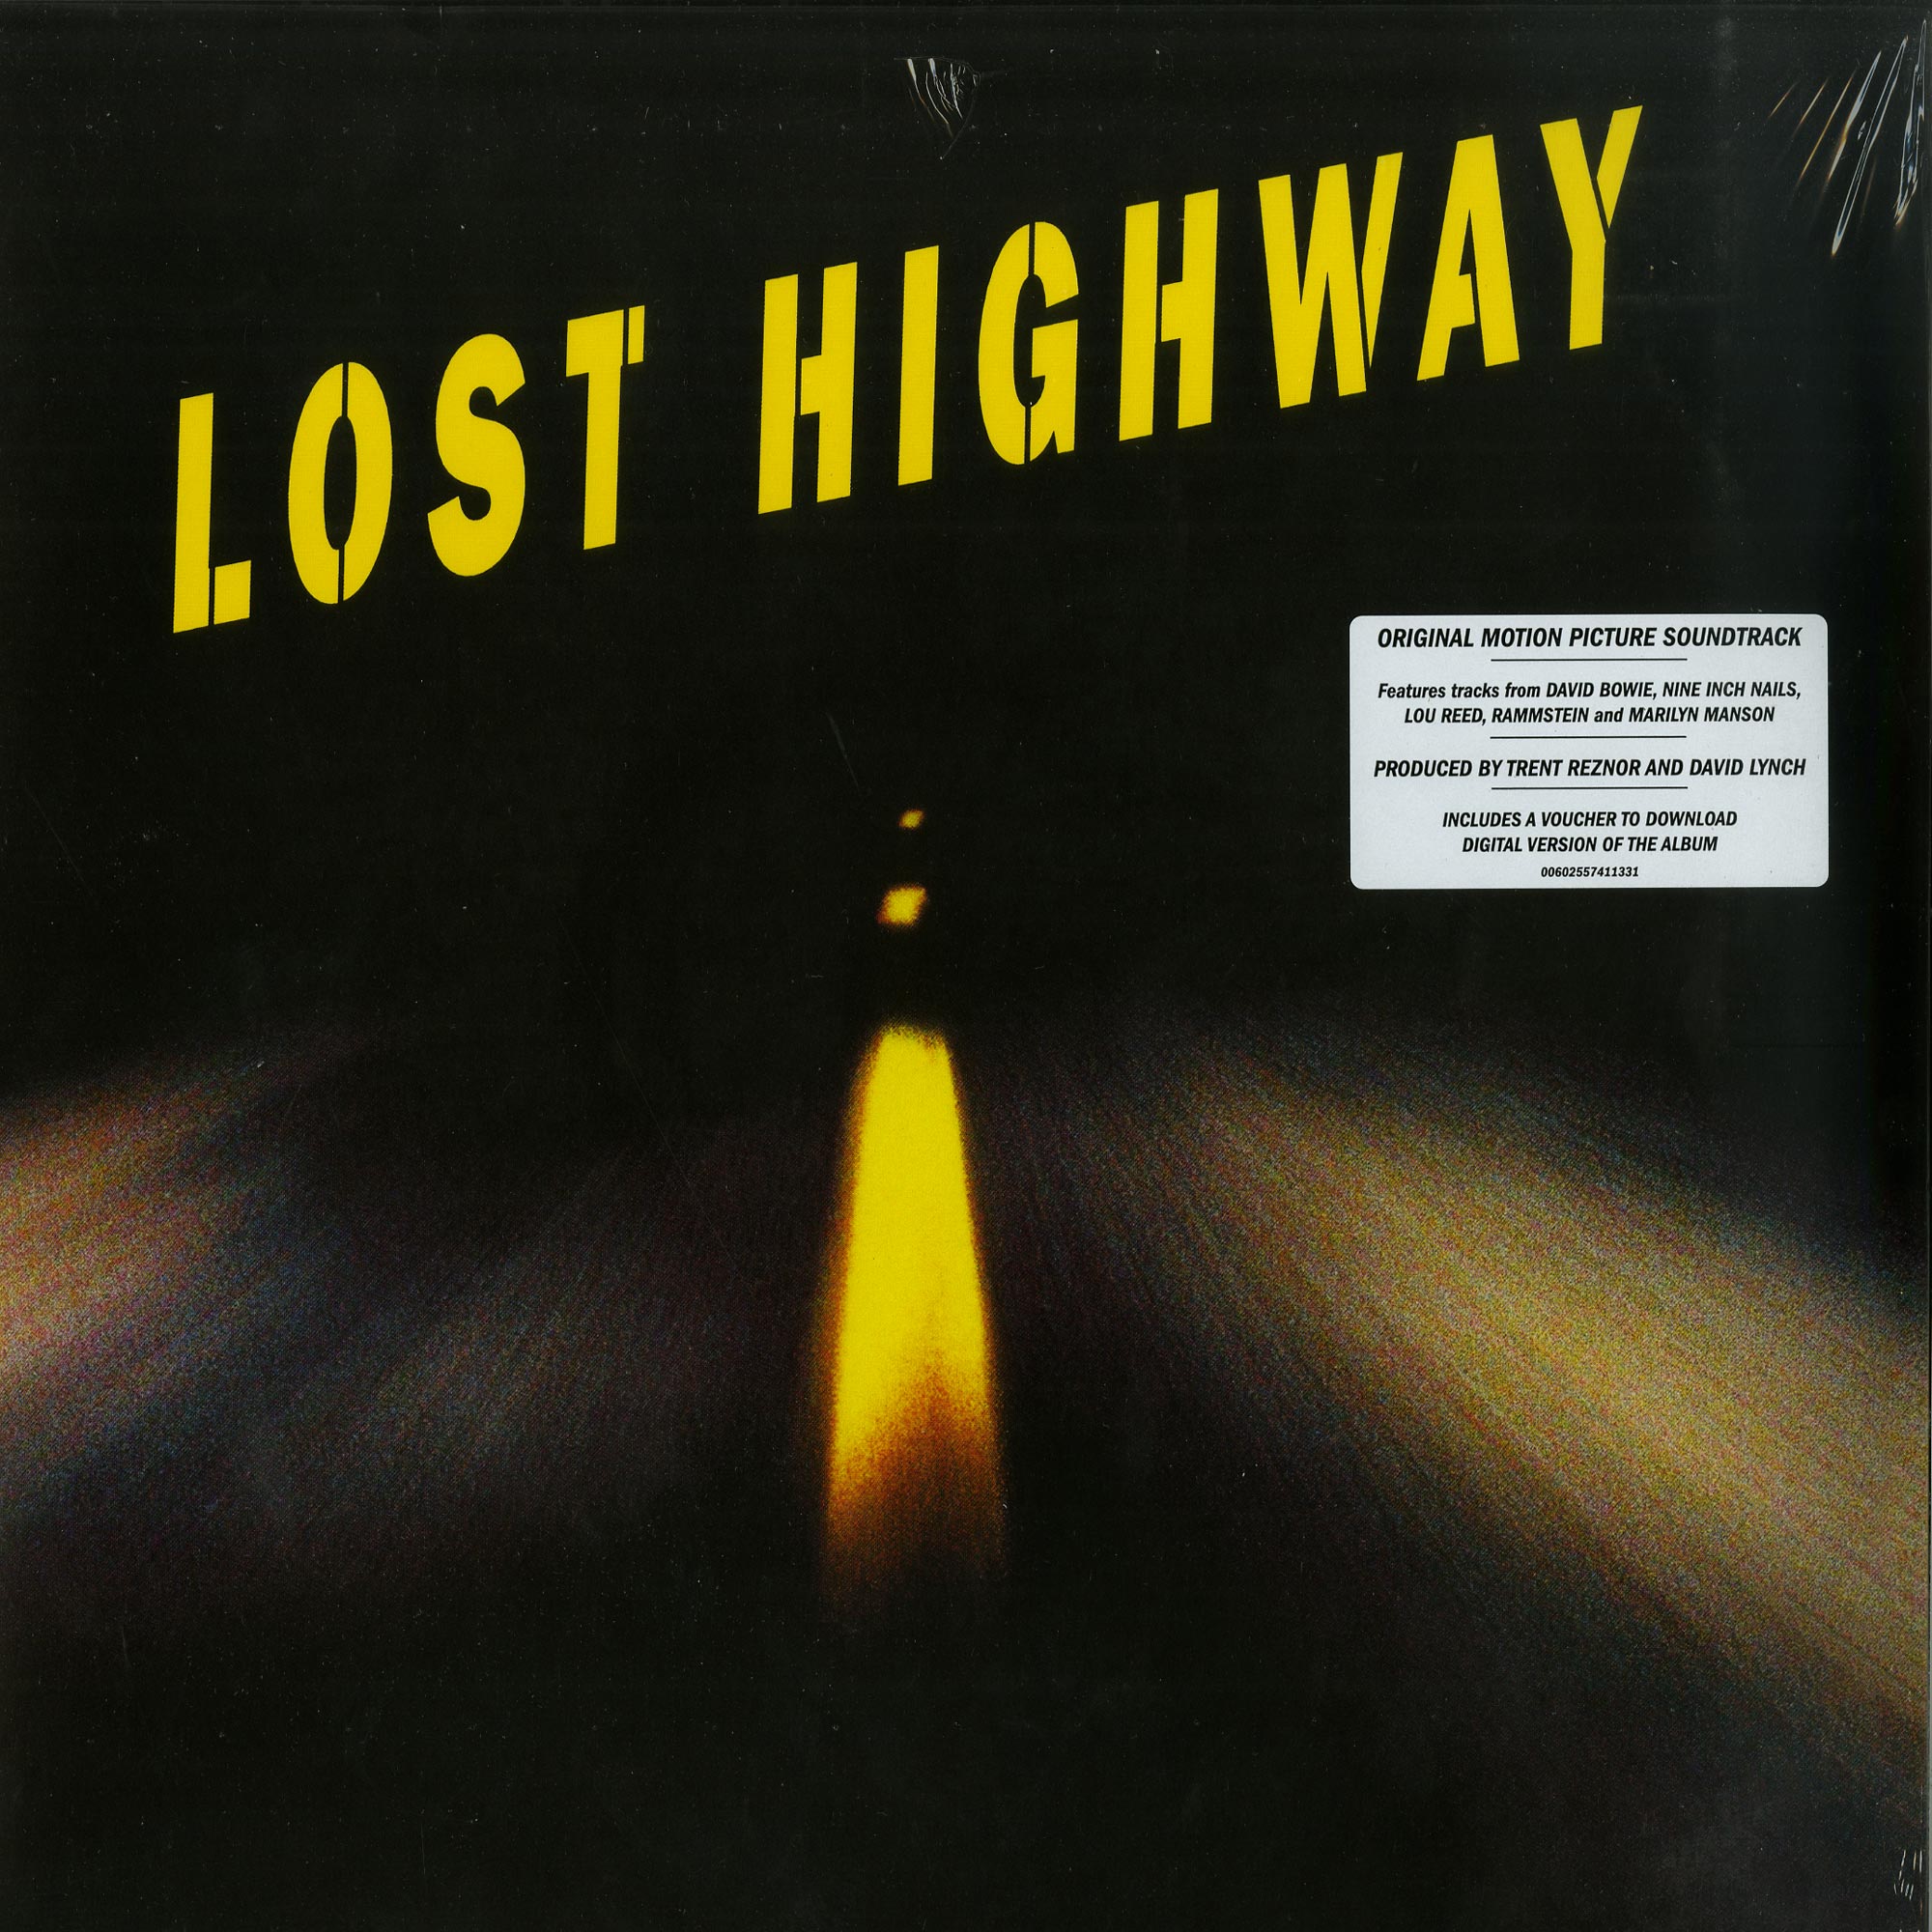 Lost soundtrack. Lost Highway Soundtrack. Виниловая пластинка various artists - Lost Highway (Original Motion picture Soundtrack) 2lp. Lost Highway Rammstein. Aaron обложка Lost Highway.